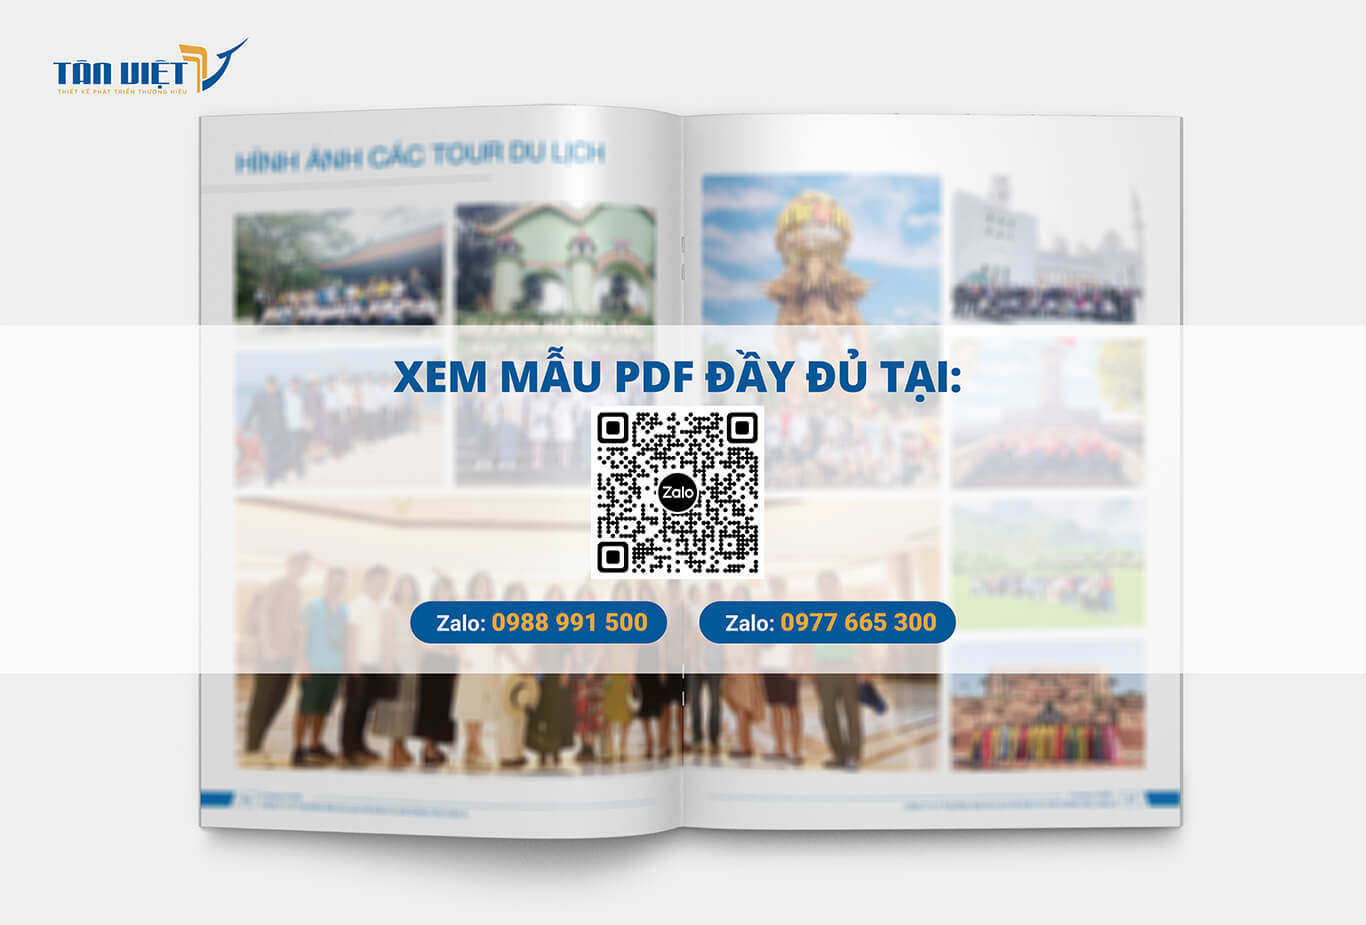 Xem mẫu PDF Công ty du lịch TĐV Châu Á đầy đủ tại đây!